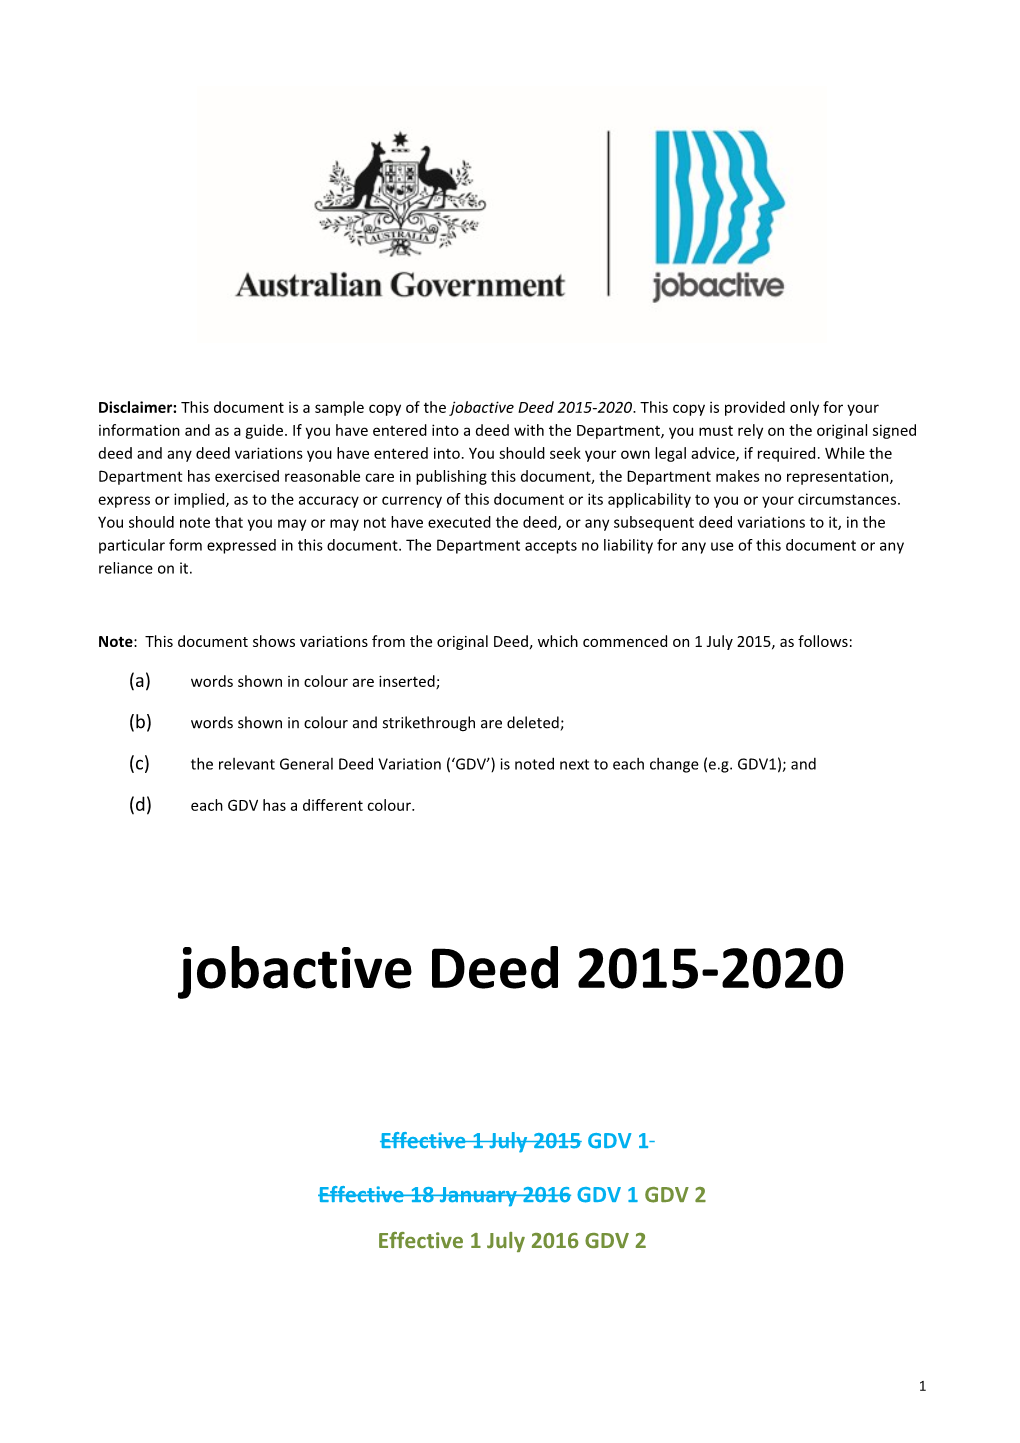 General Deed Variation No. 2 Jobactive Deed 2015-2020